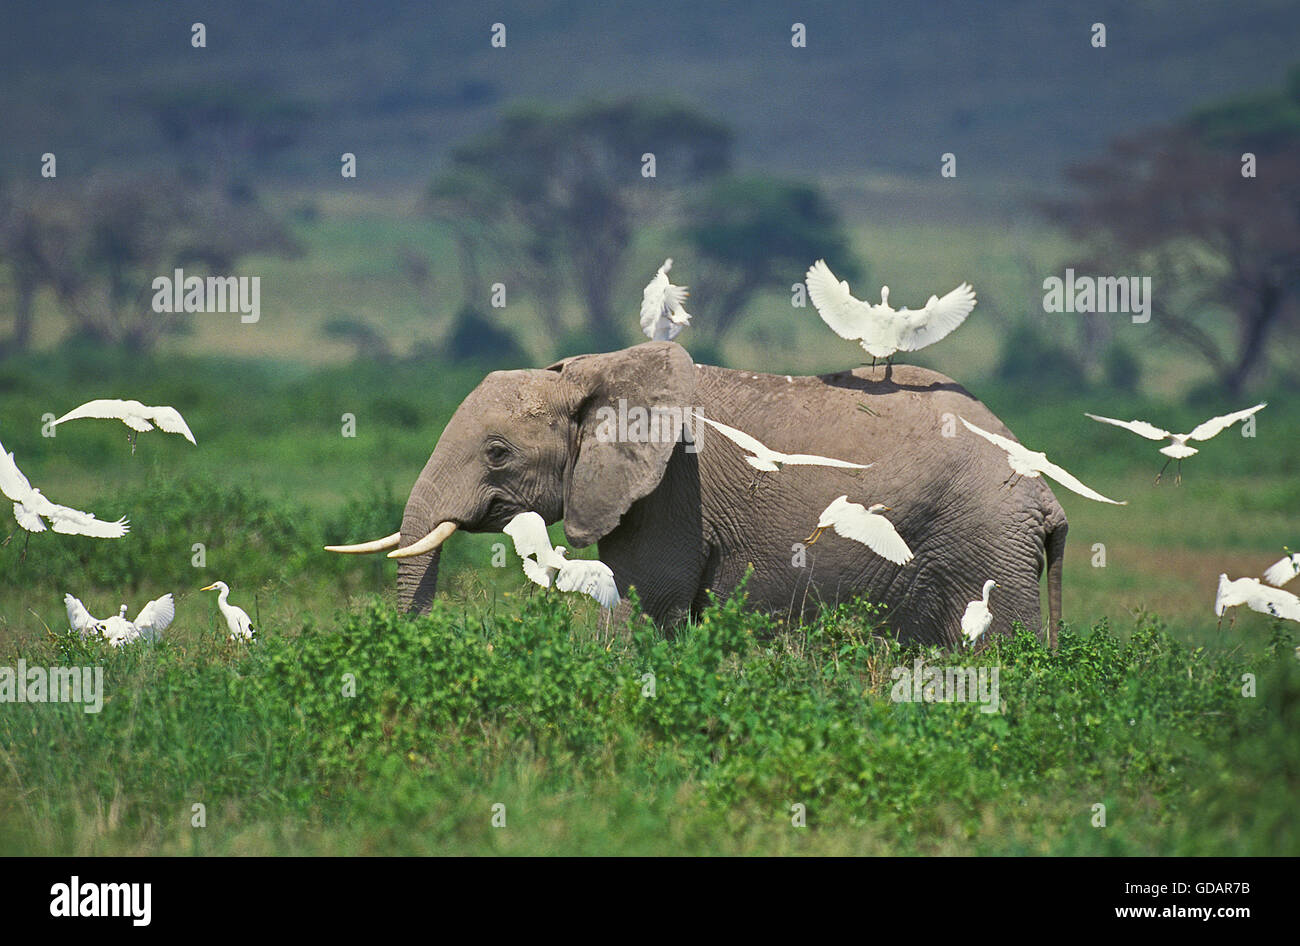 AFRICAN ELEPHANT loxodonta africana WITH CATTLE EGRETS, KENYA Stock Photo